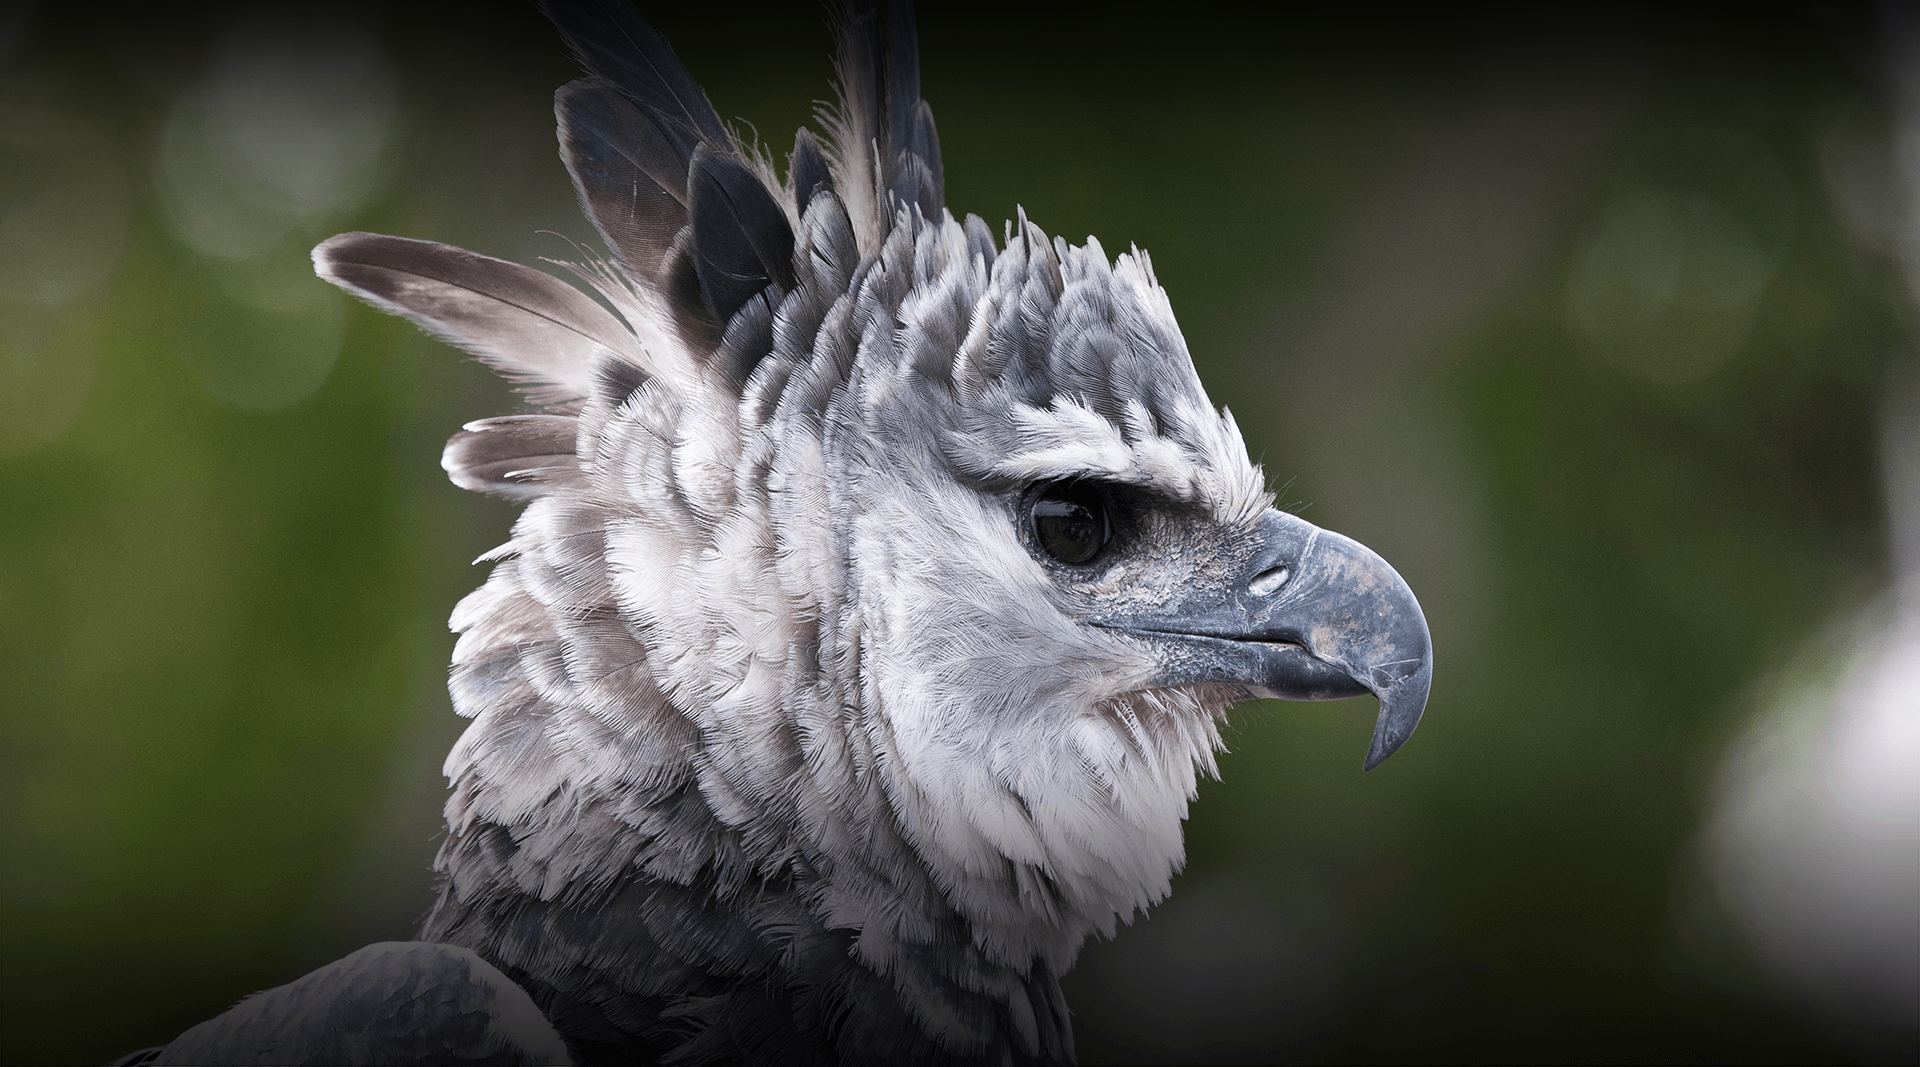 Harpy Eagle png images